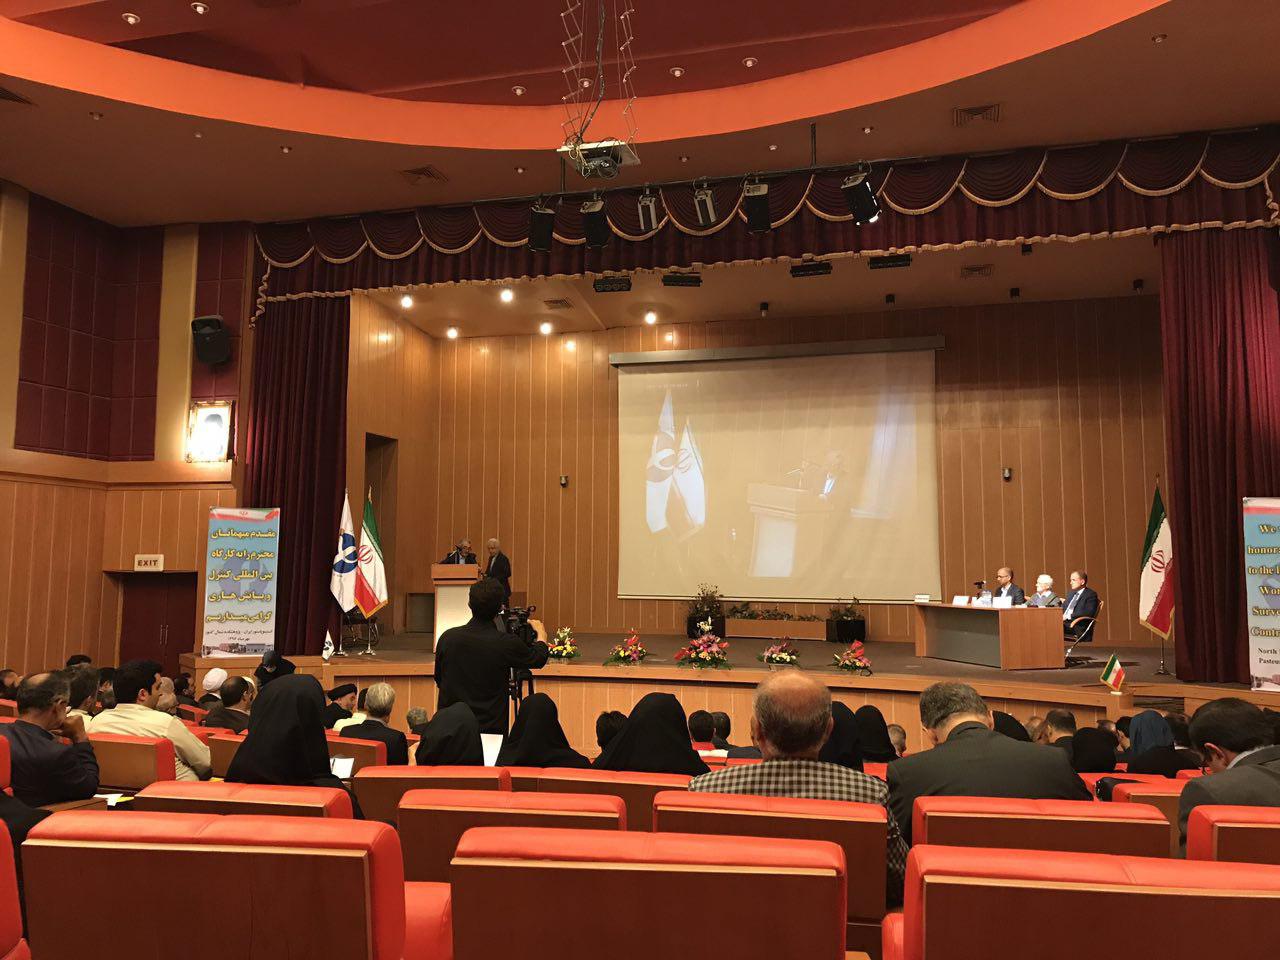 کارگاه بین المللی کنترل و پایش بيماري هاری در آمل - استان مازندران برگزار شد.